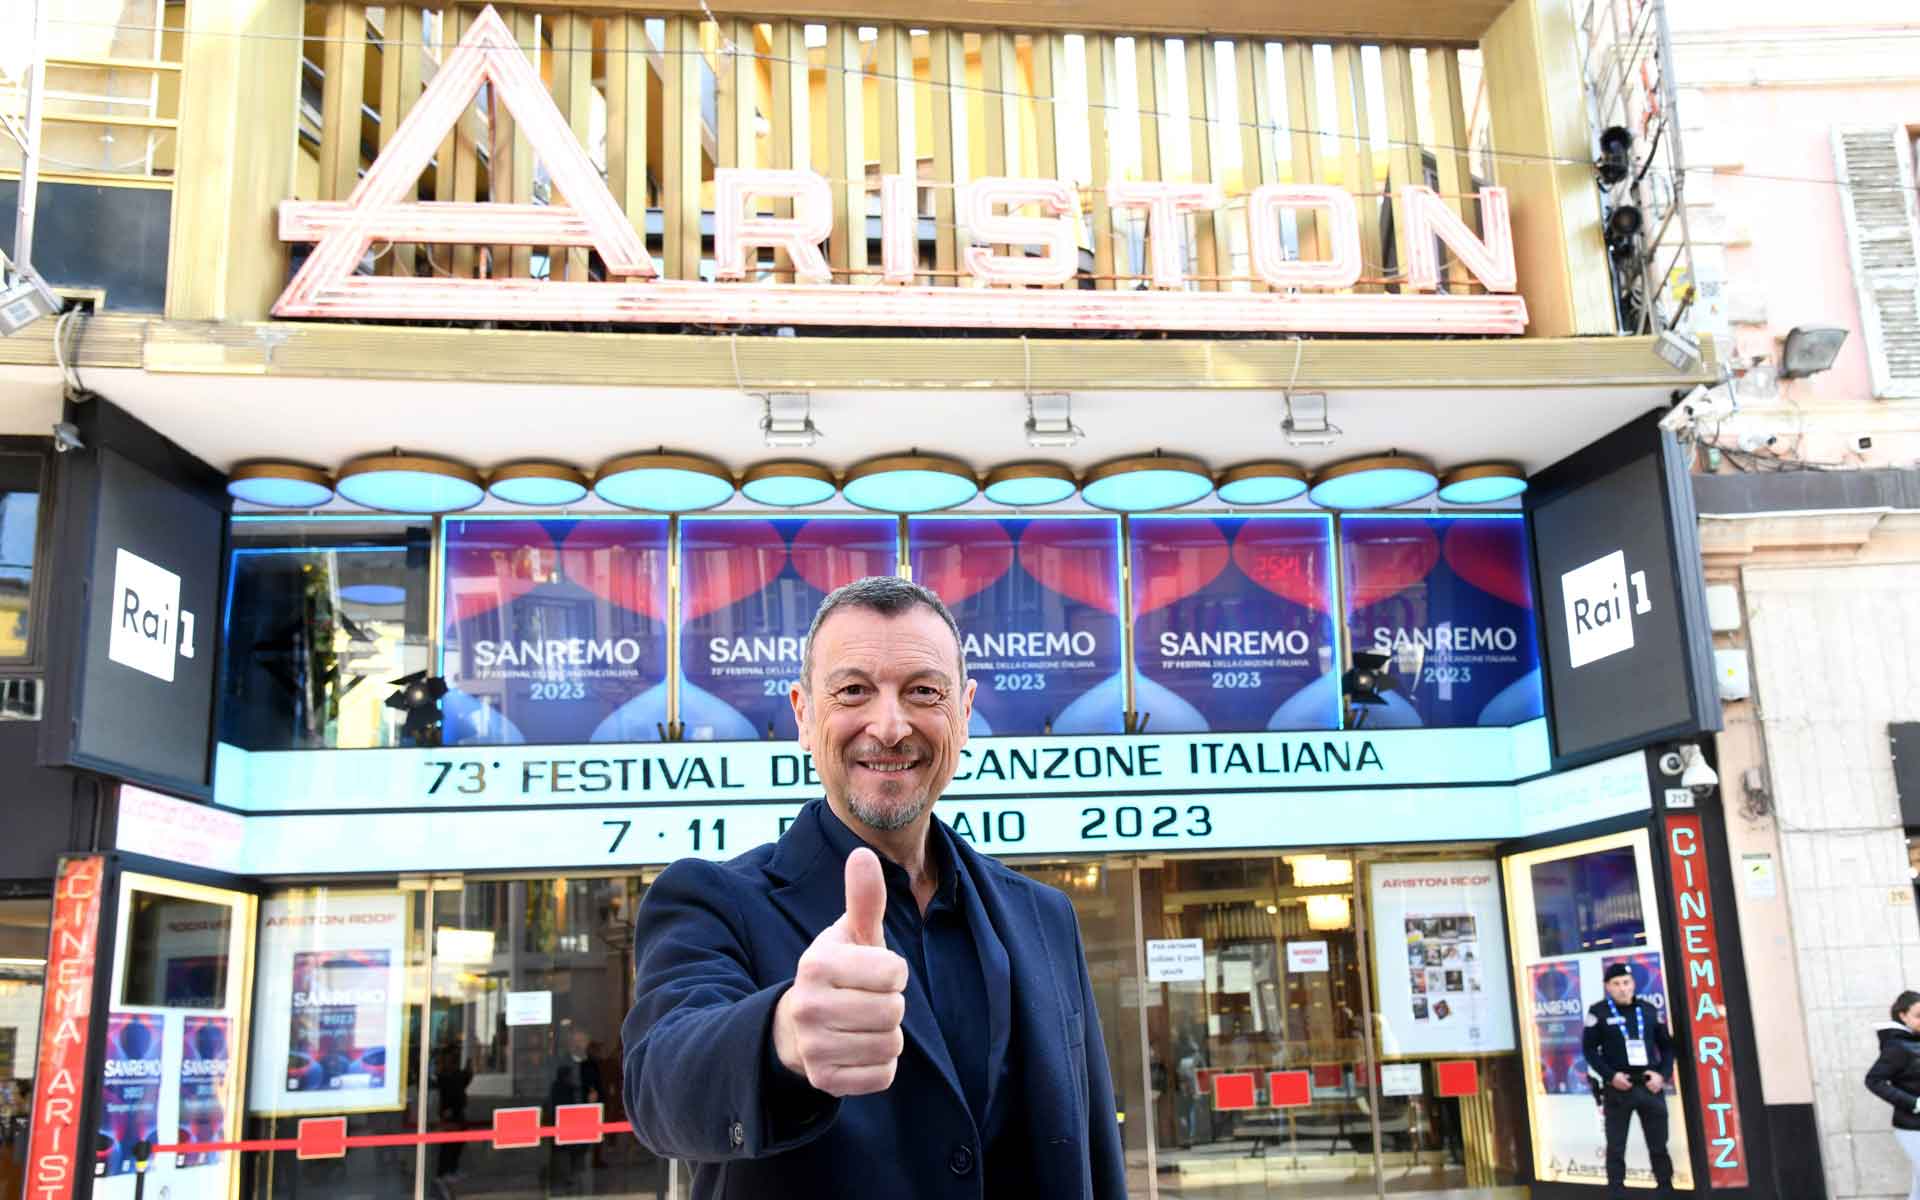 The Festival of Sanremo 2021 - A True Italian Tradition